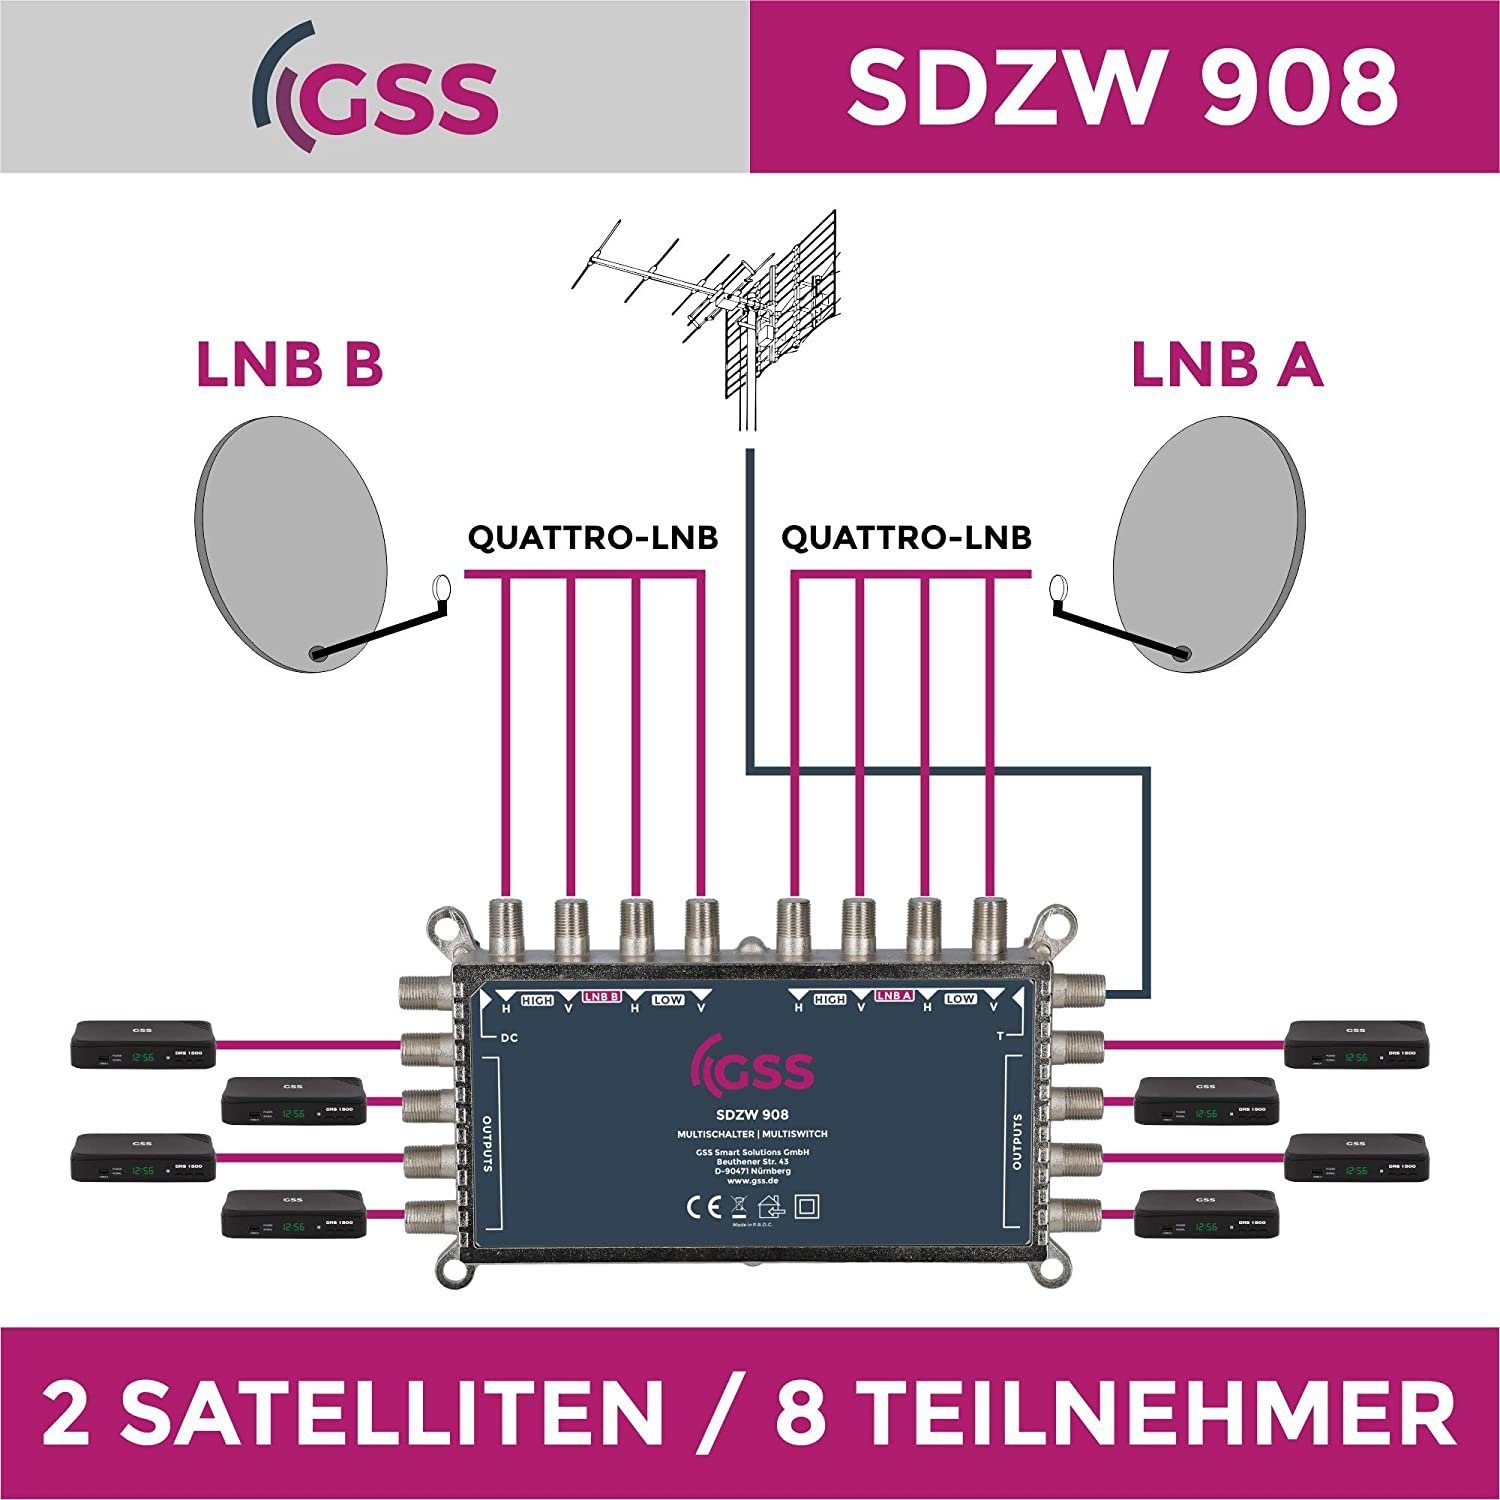 Grundig Infrarotheizung GSS SDZW 908 Multischalter ohne Netzteil